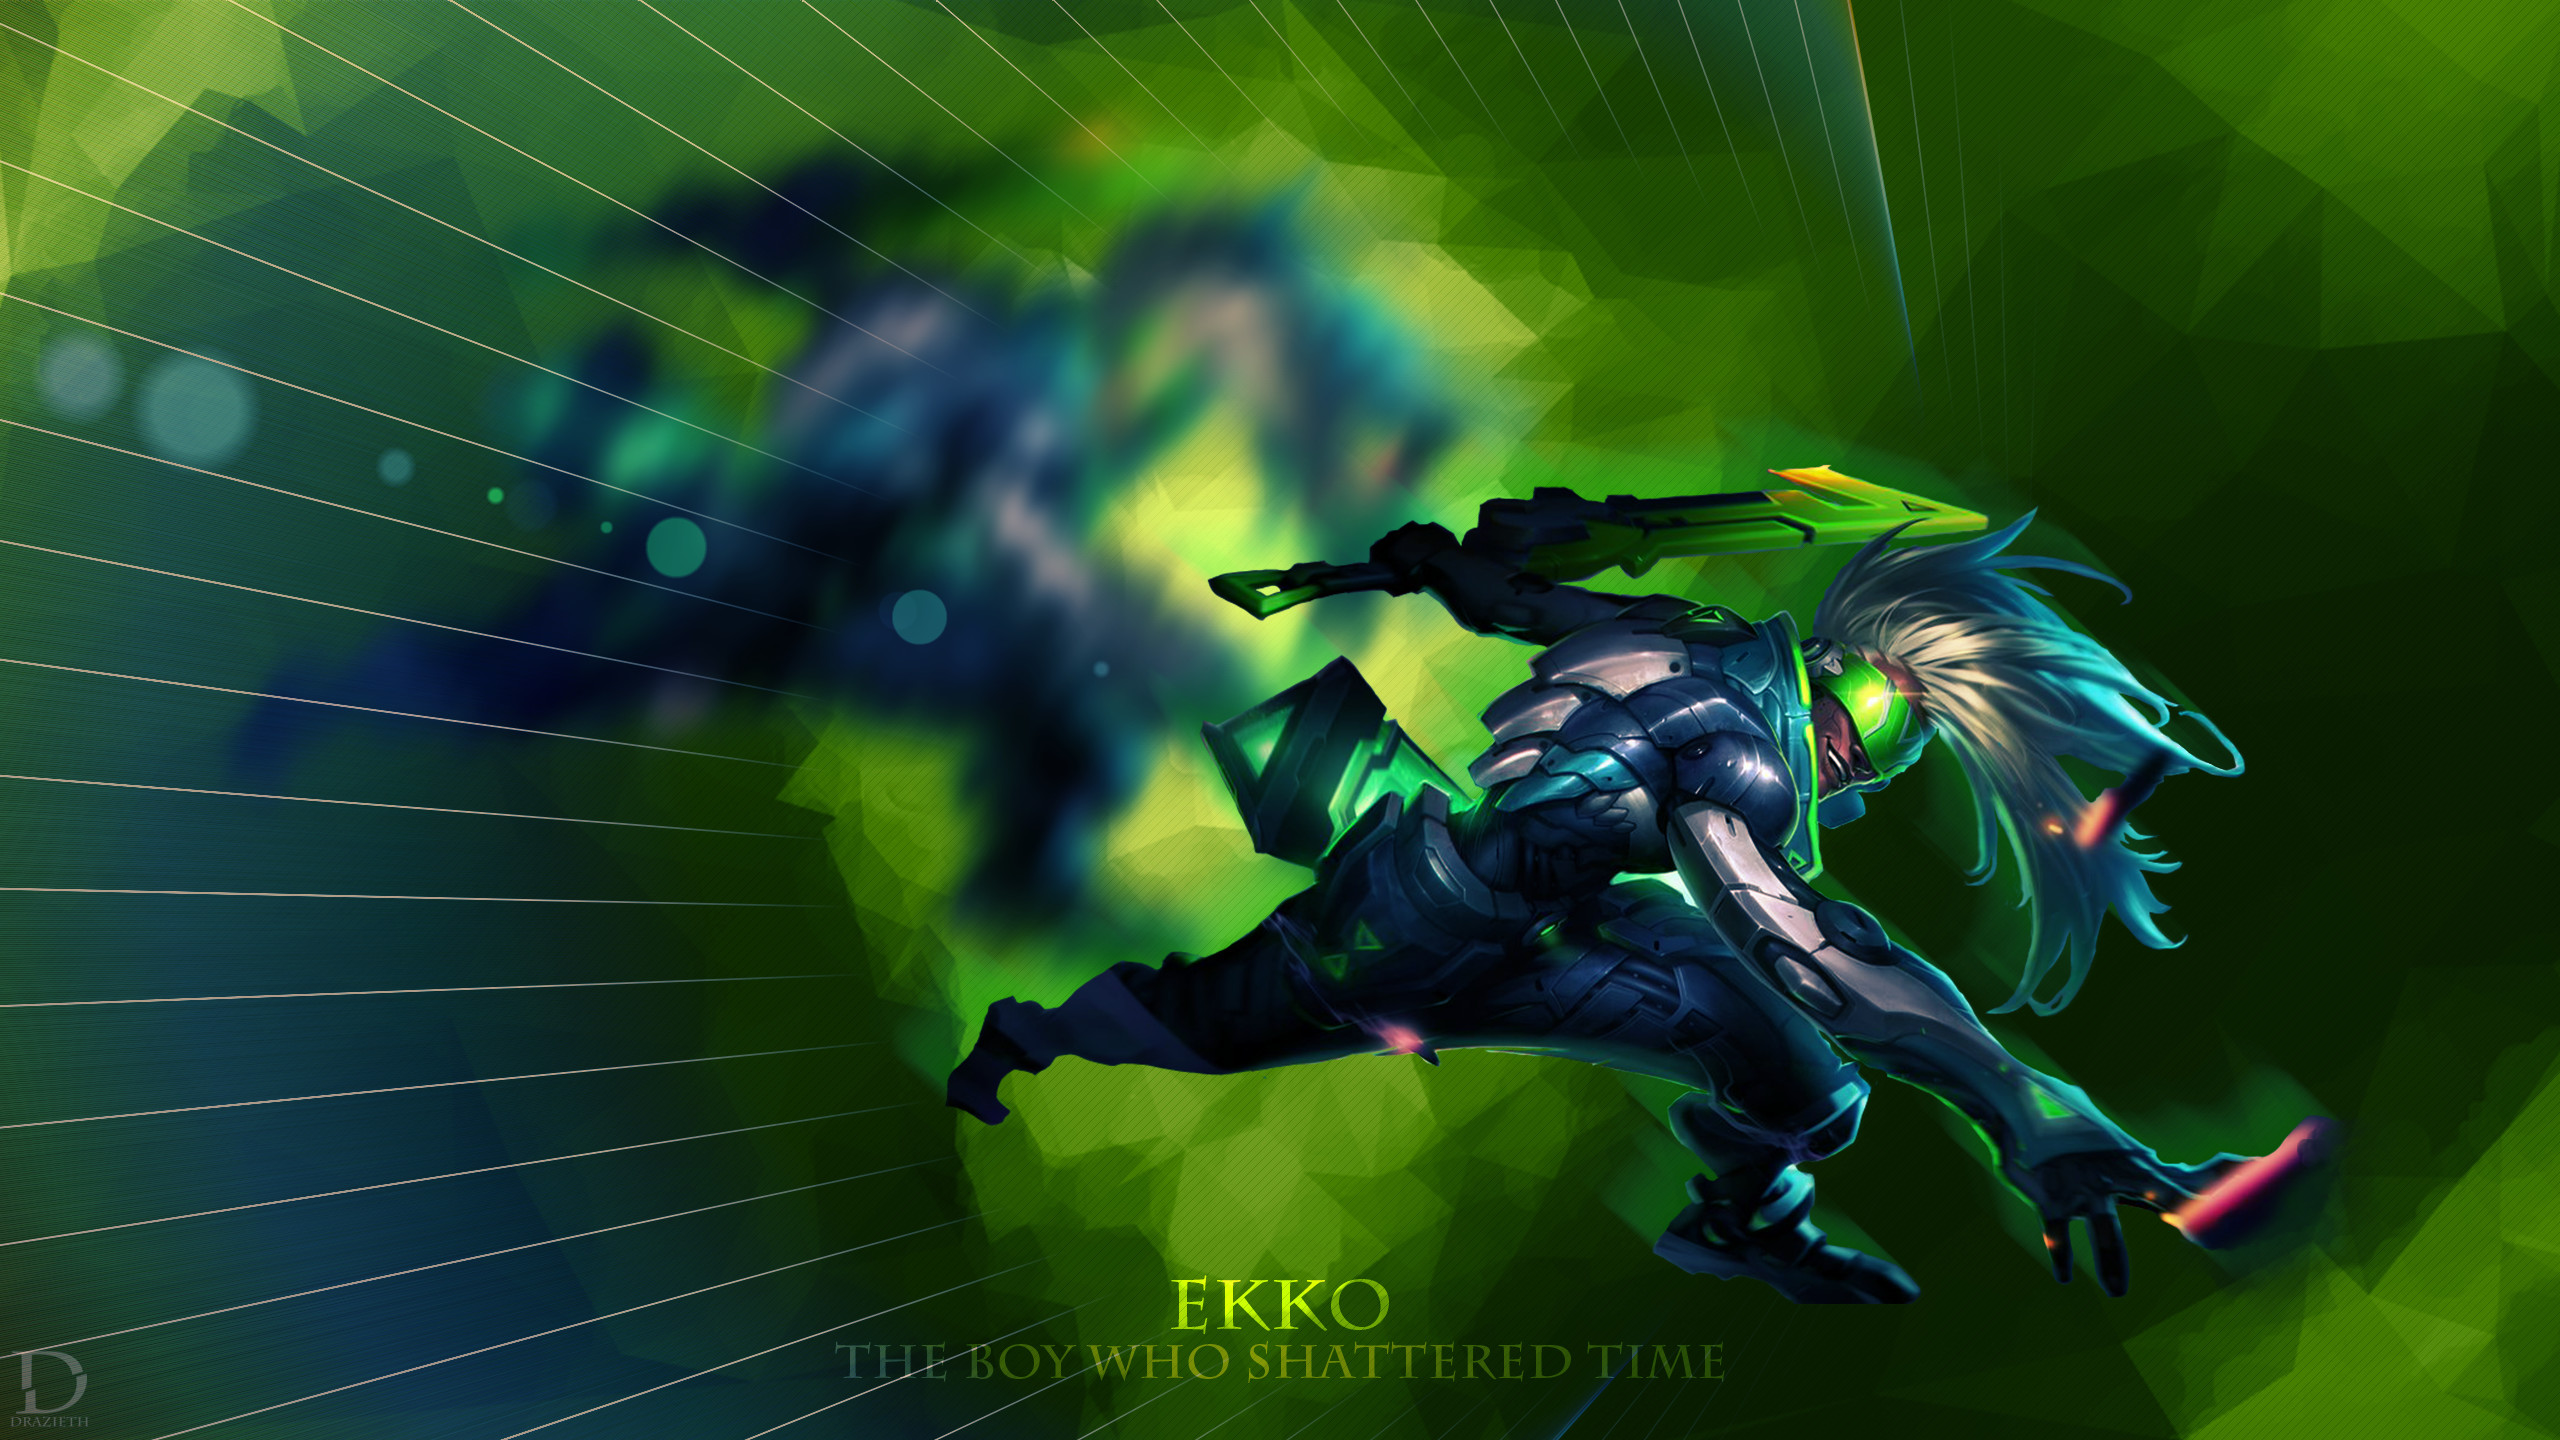 2560x1440 ... Project Ekko - League of Legends Wallpaper by Drazieth